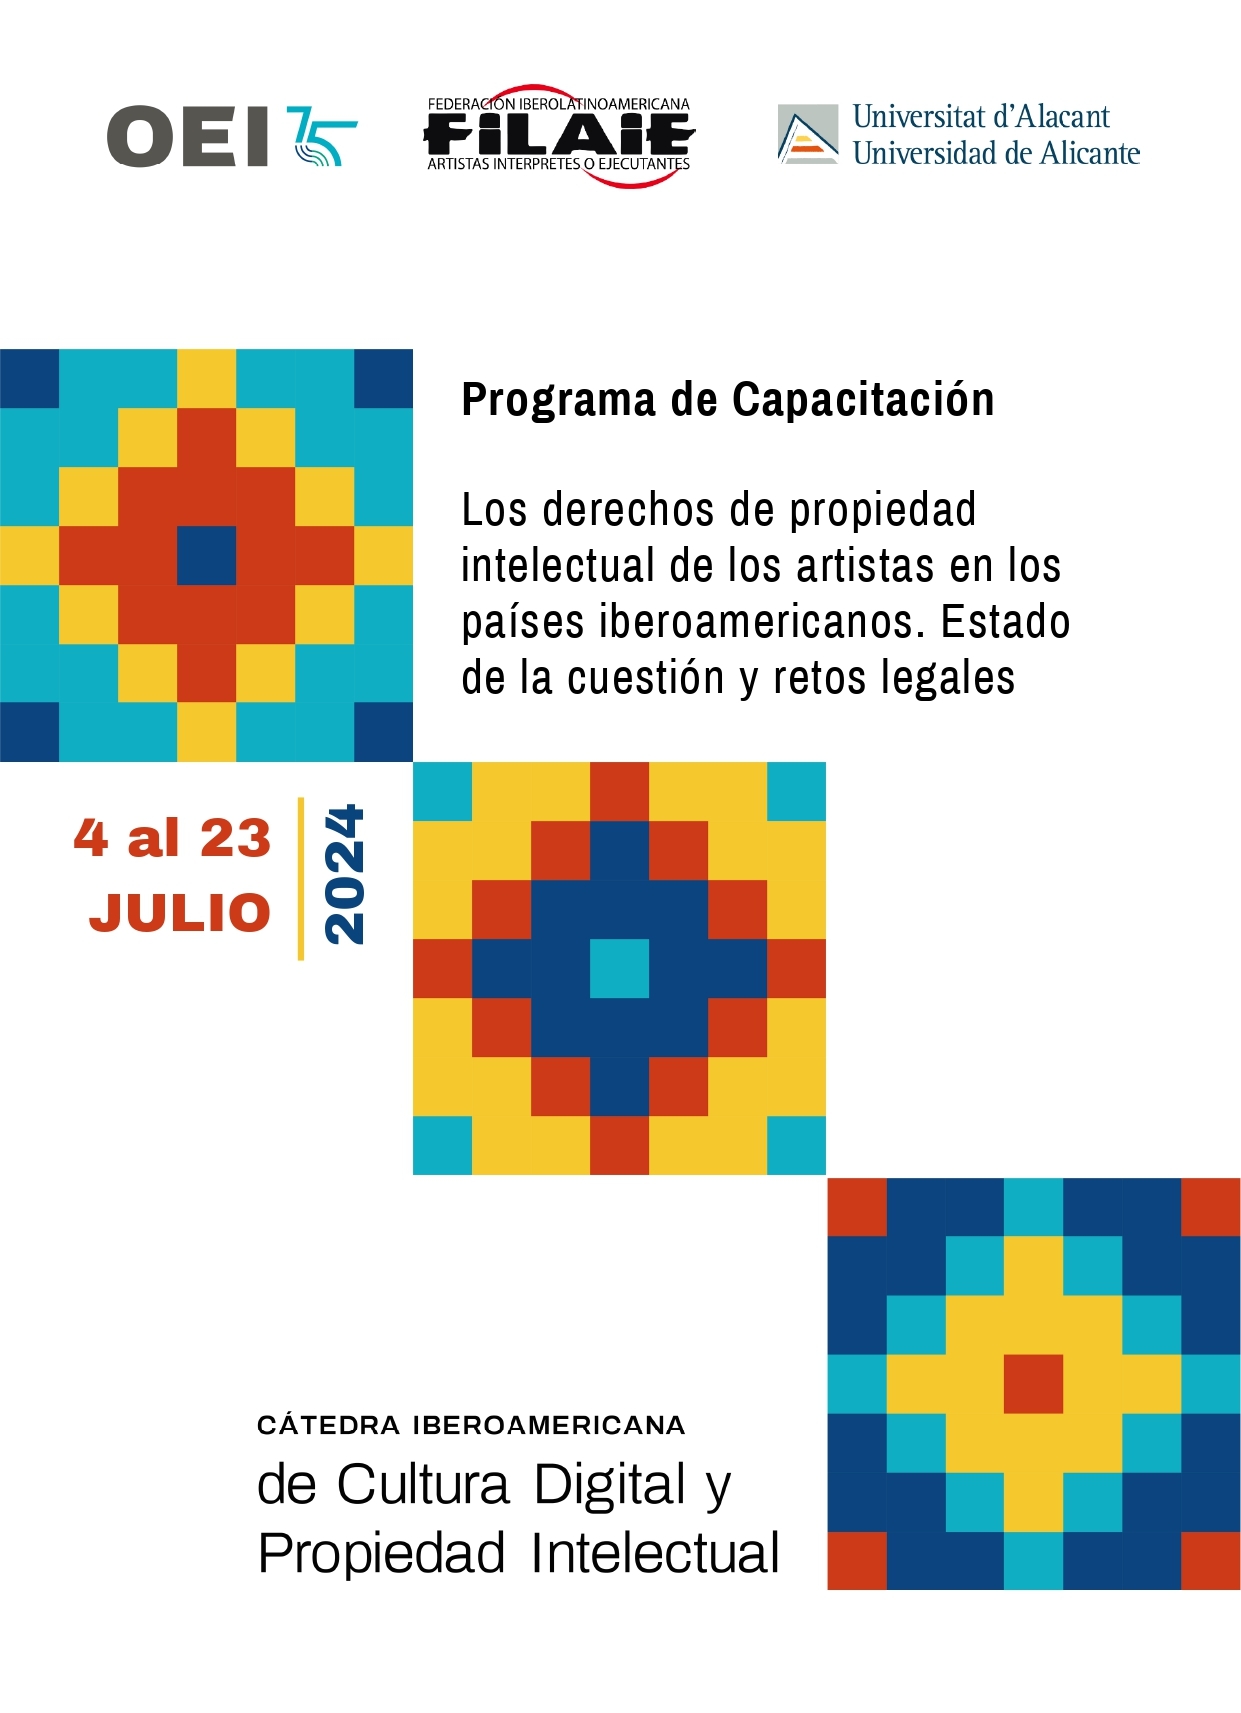 Los derechos de propiedad intelectual de los artistas en los países iberoamericanos: Estado de la cuestión y retos legales (Sesión 4)